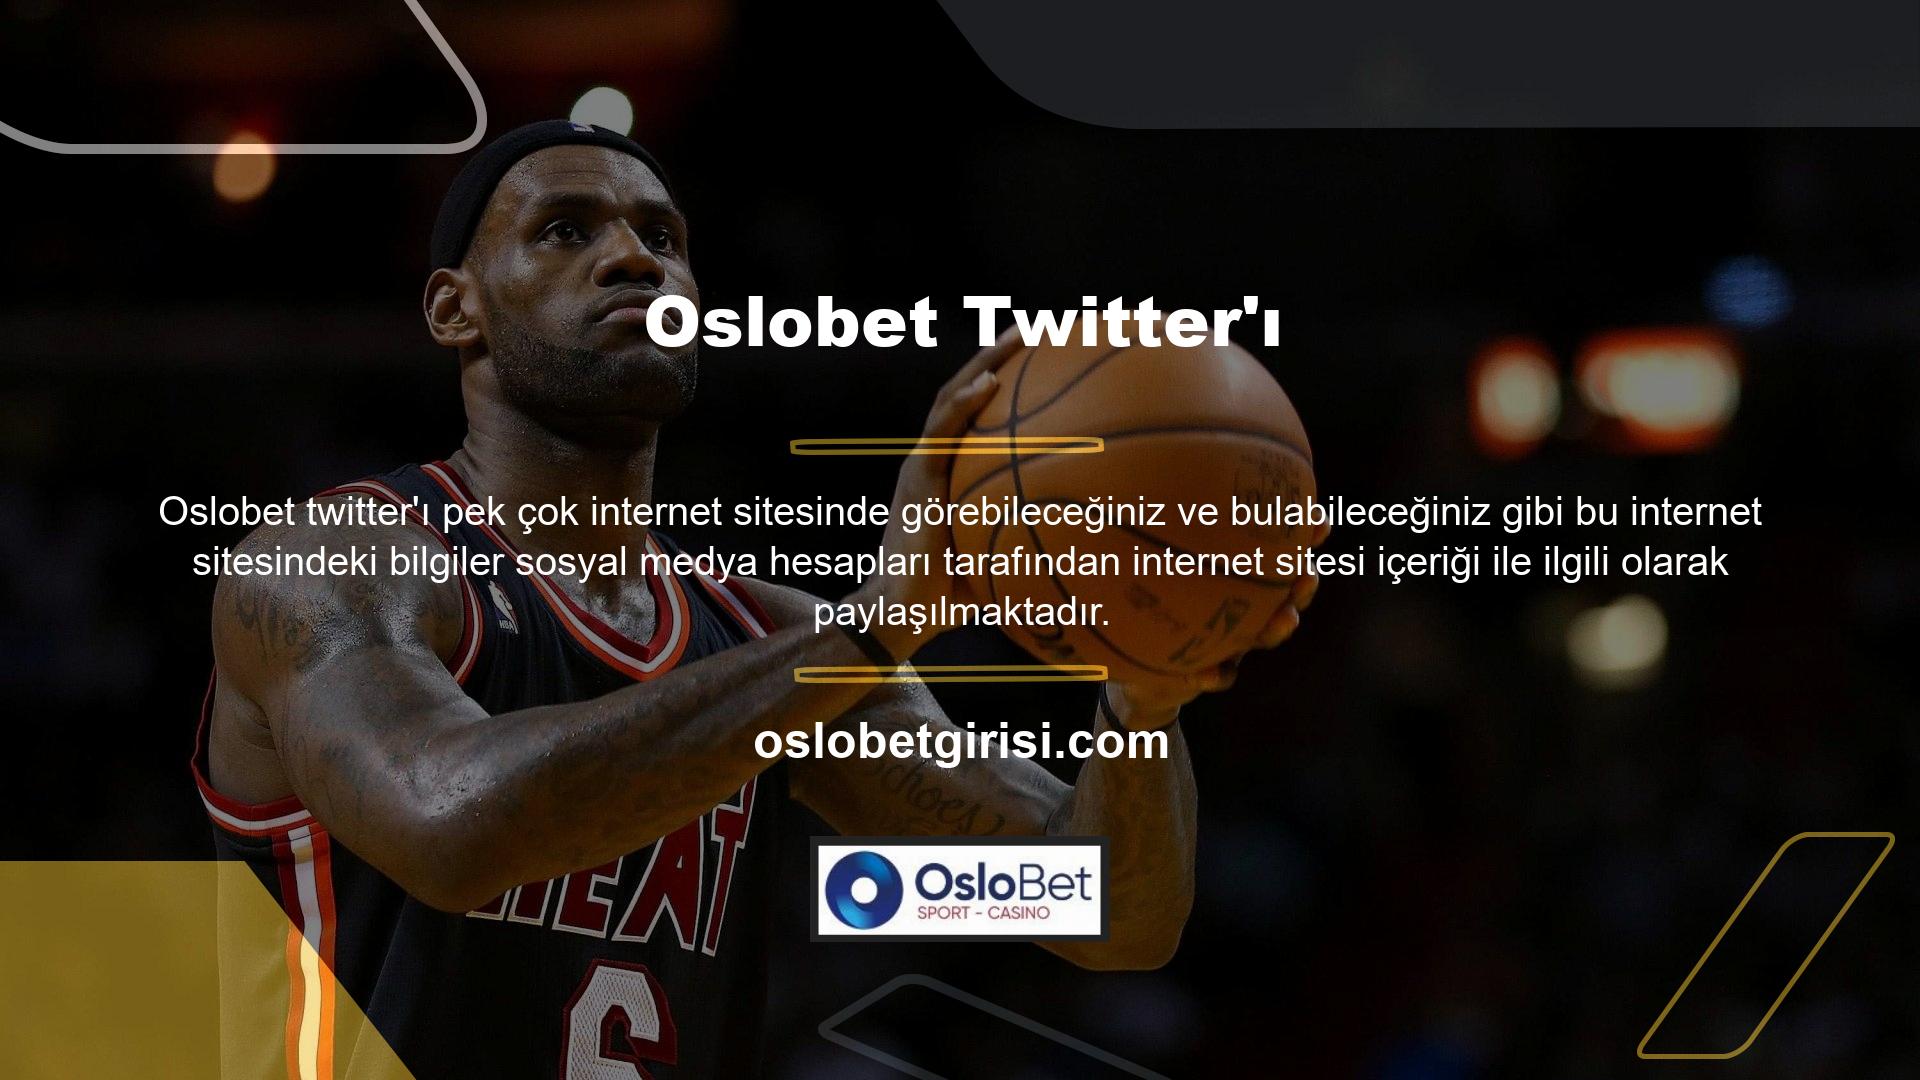 Kullanılan resmi sosyal medya hesaplarından biri de Oslobet Twitter'ı